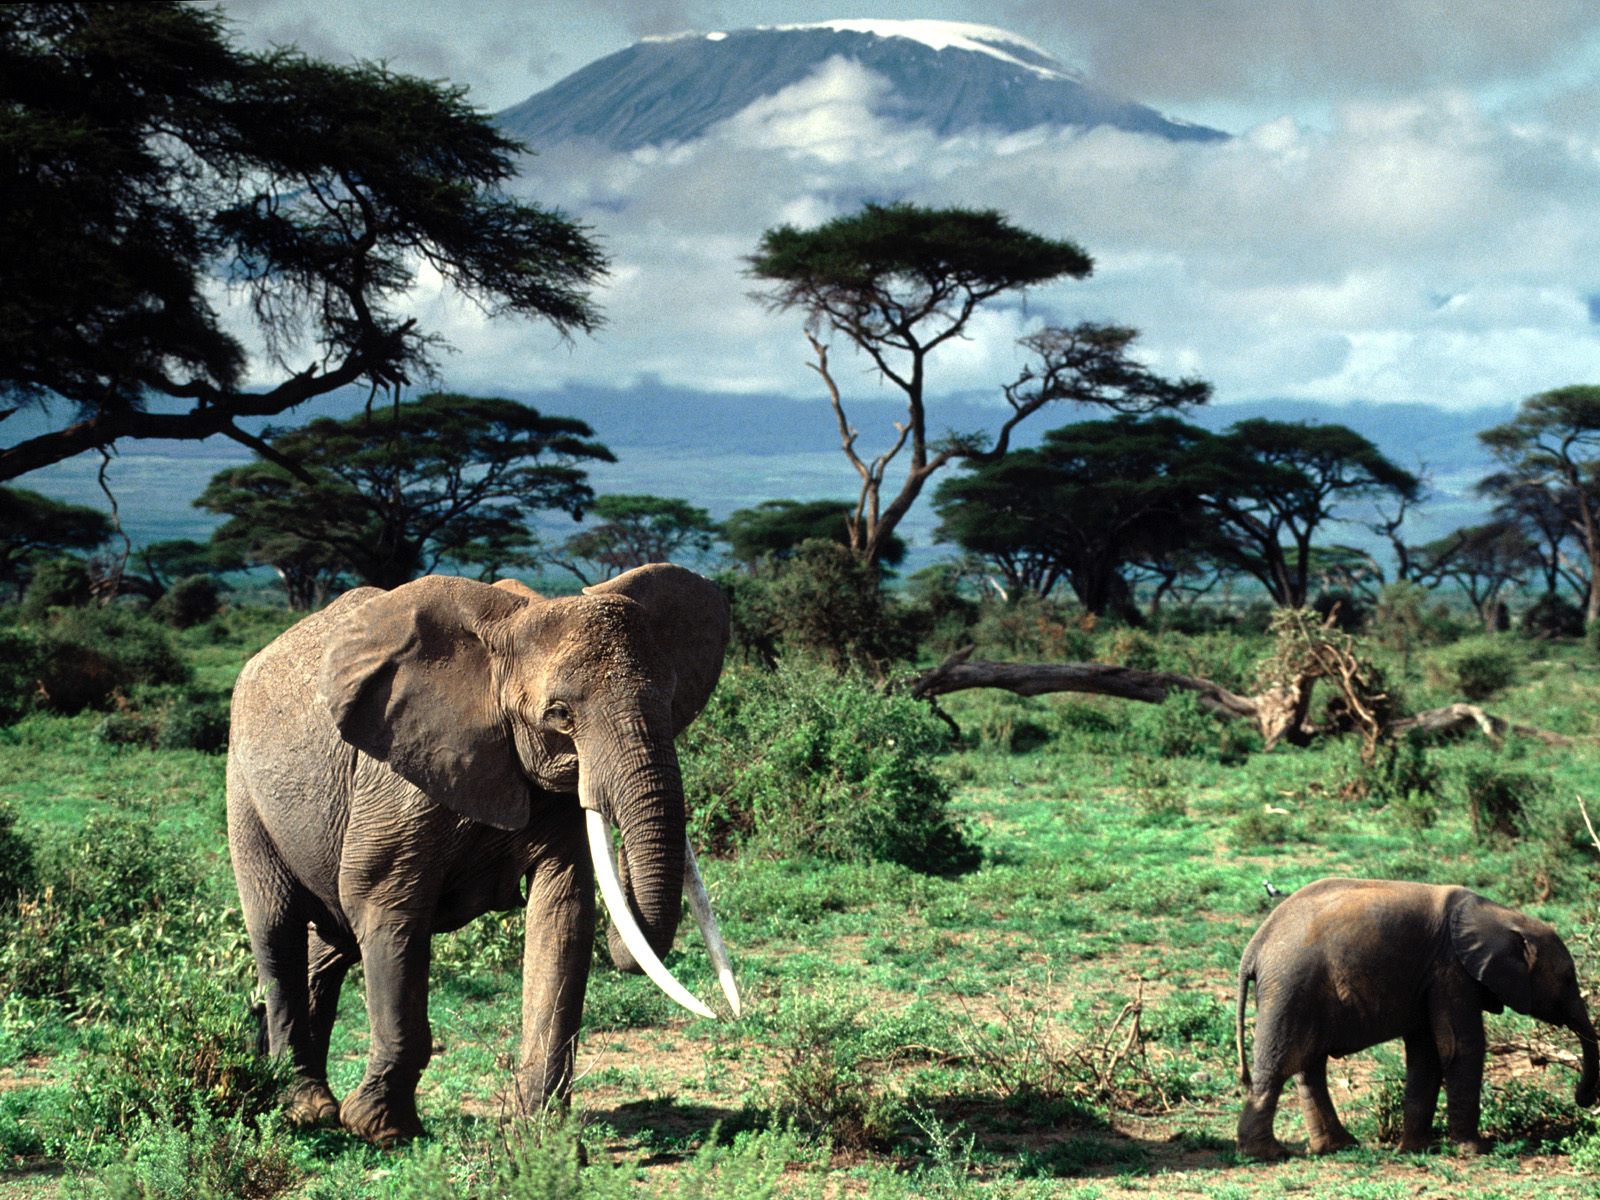 photo of elephants at Mount Kilimanjaro